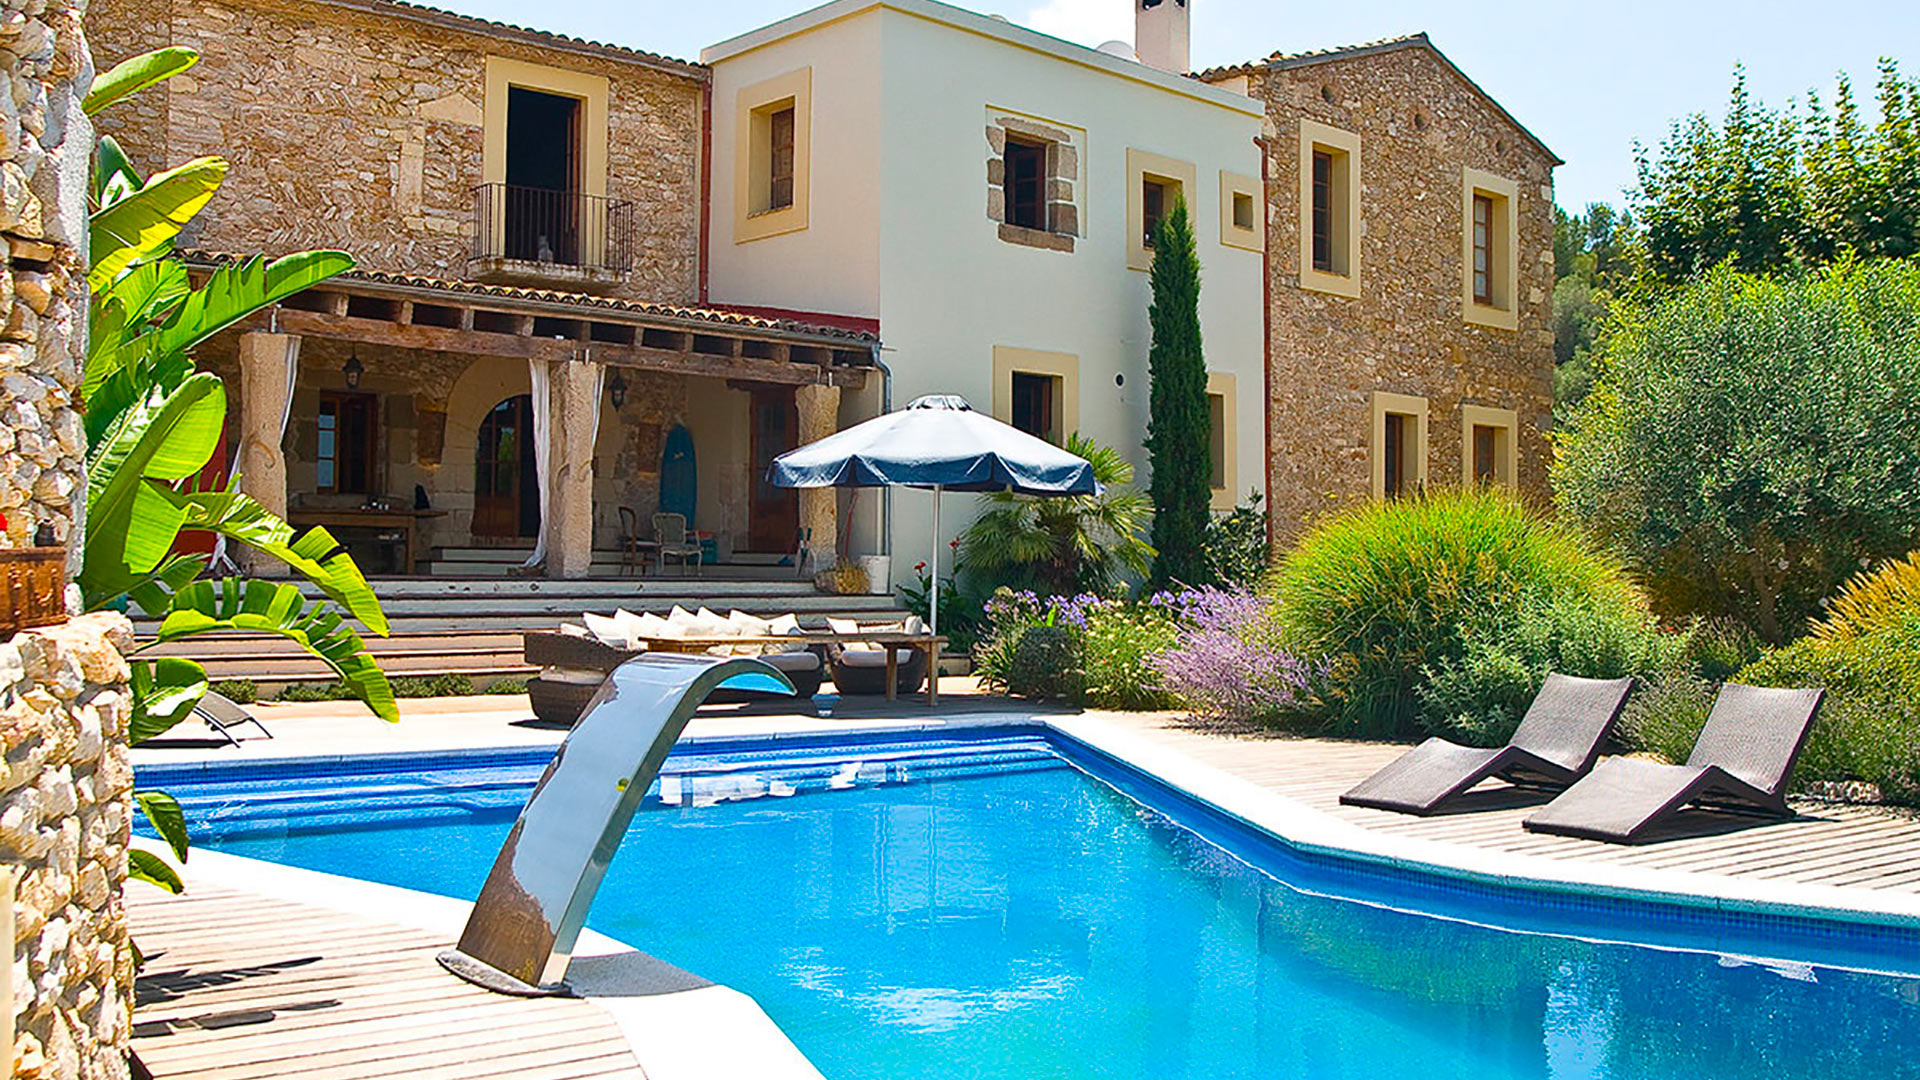 Недвижимость в испании цены